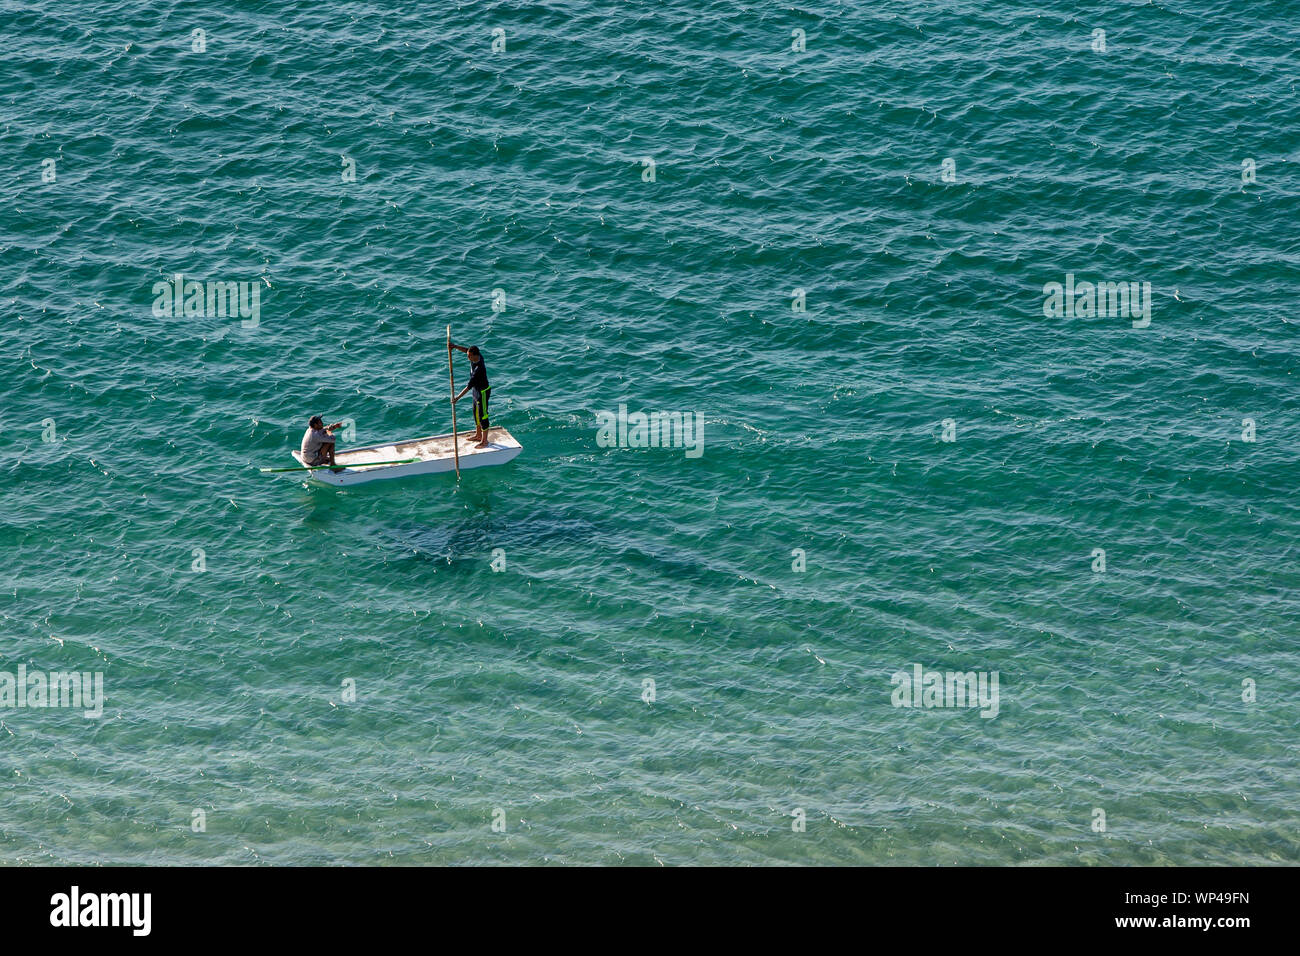 Gli uomini paddle una piccola barca attraverso le acque turchesi del Mar Mediterraneo al largo della costa di Alessandria in Egitto settentrionale. Foto Stock